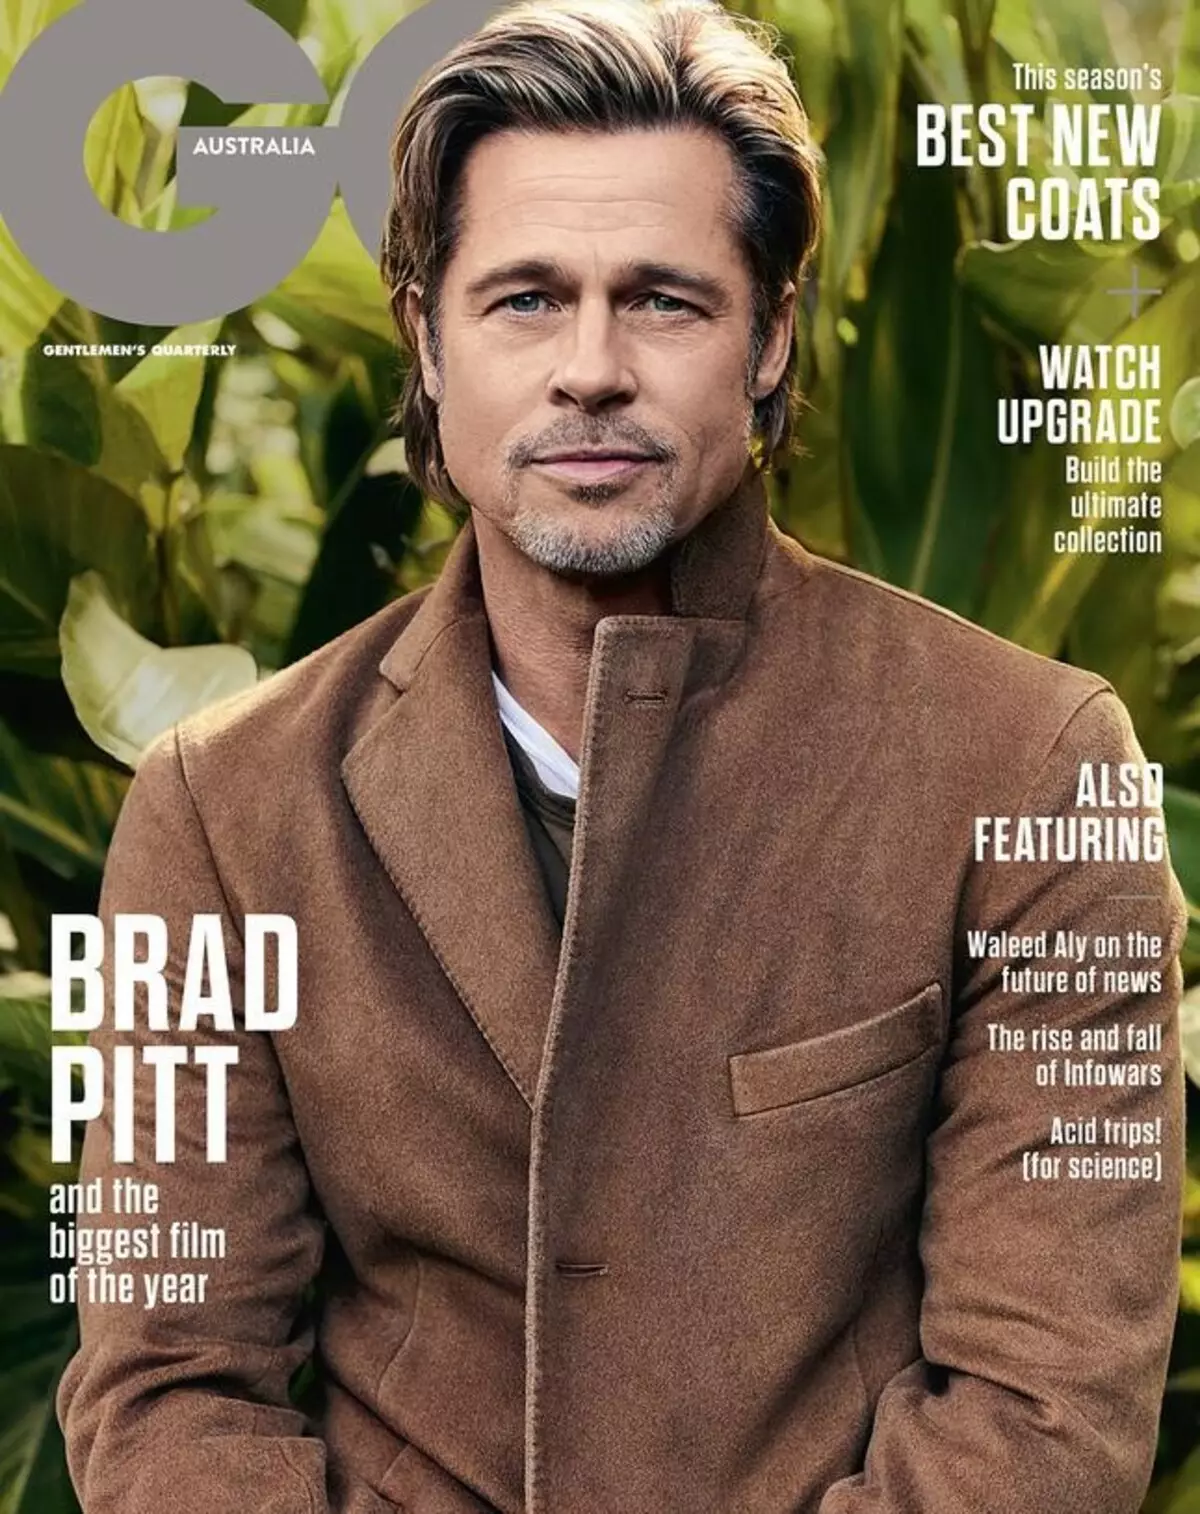 55 taun Brad Pitt dina sési poto pikeun GQ: 